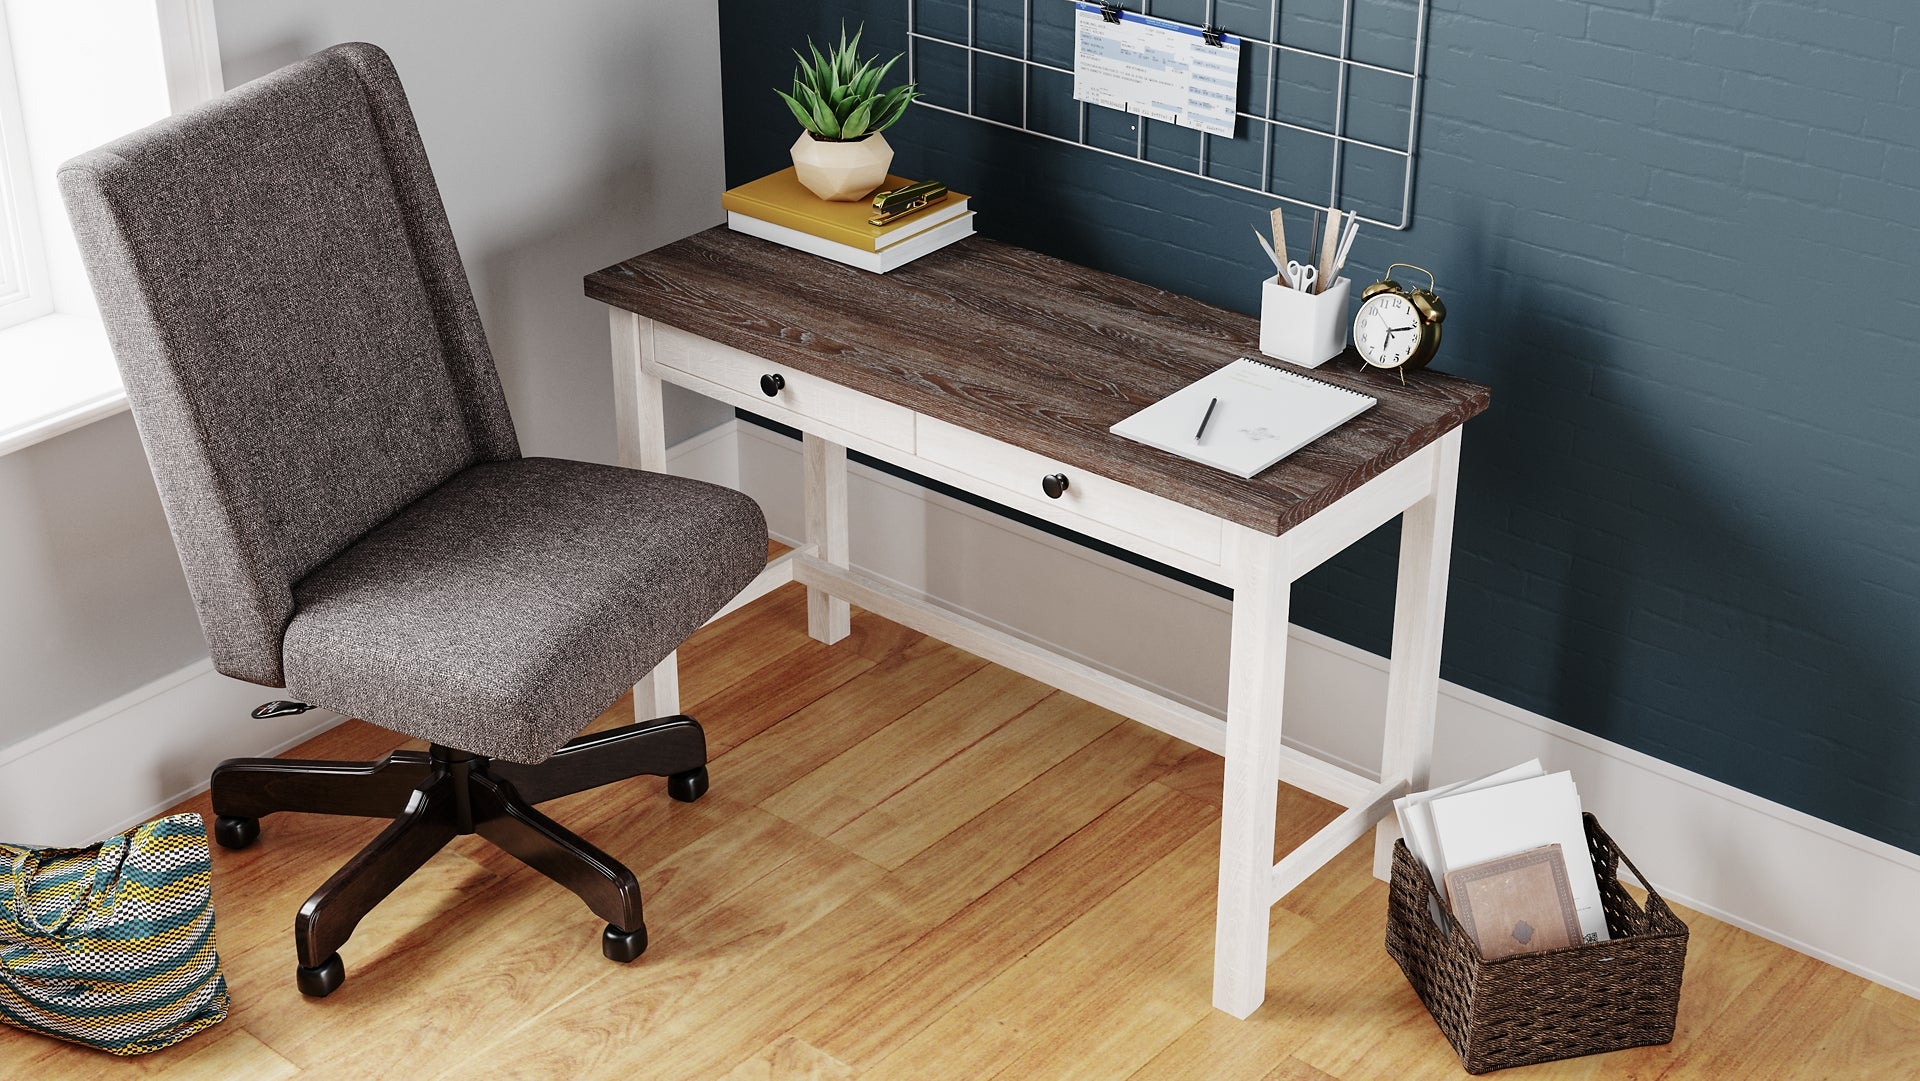 Dorrinson Home Office Desk – Furniture & Cabinet Outlet Centers